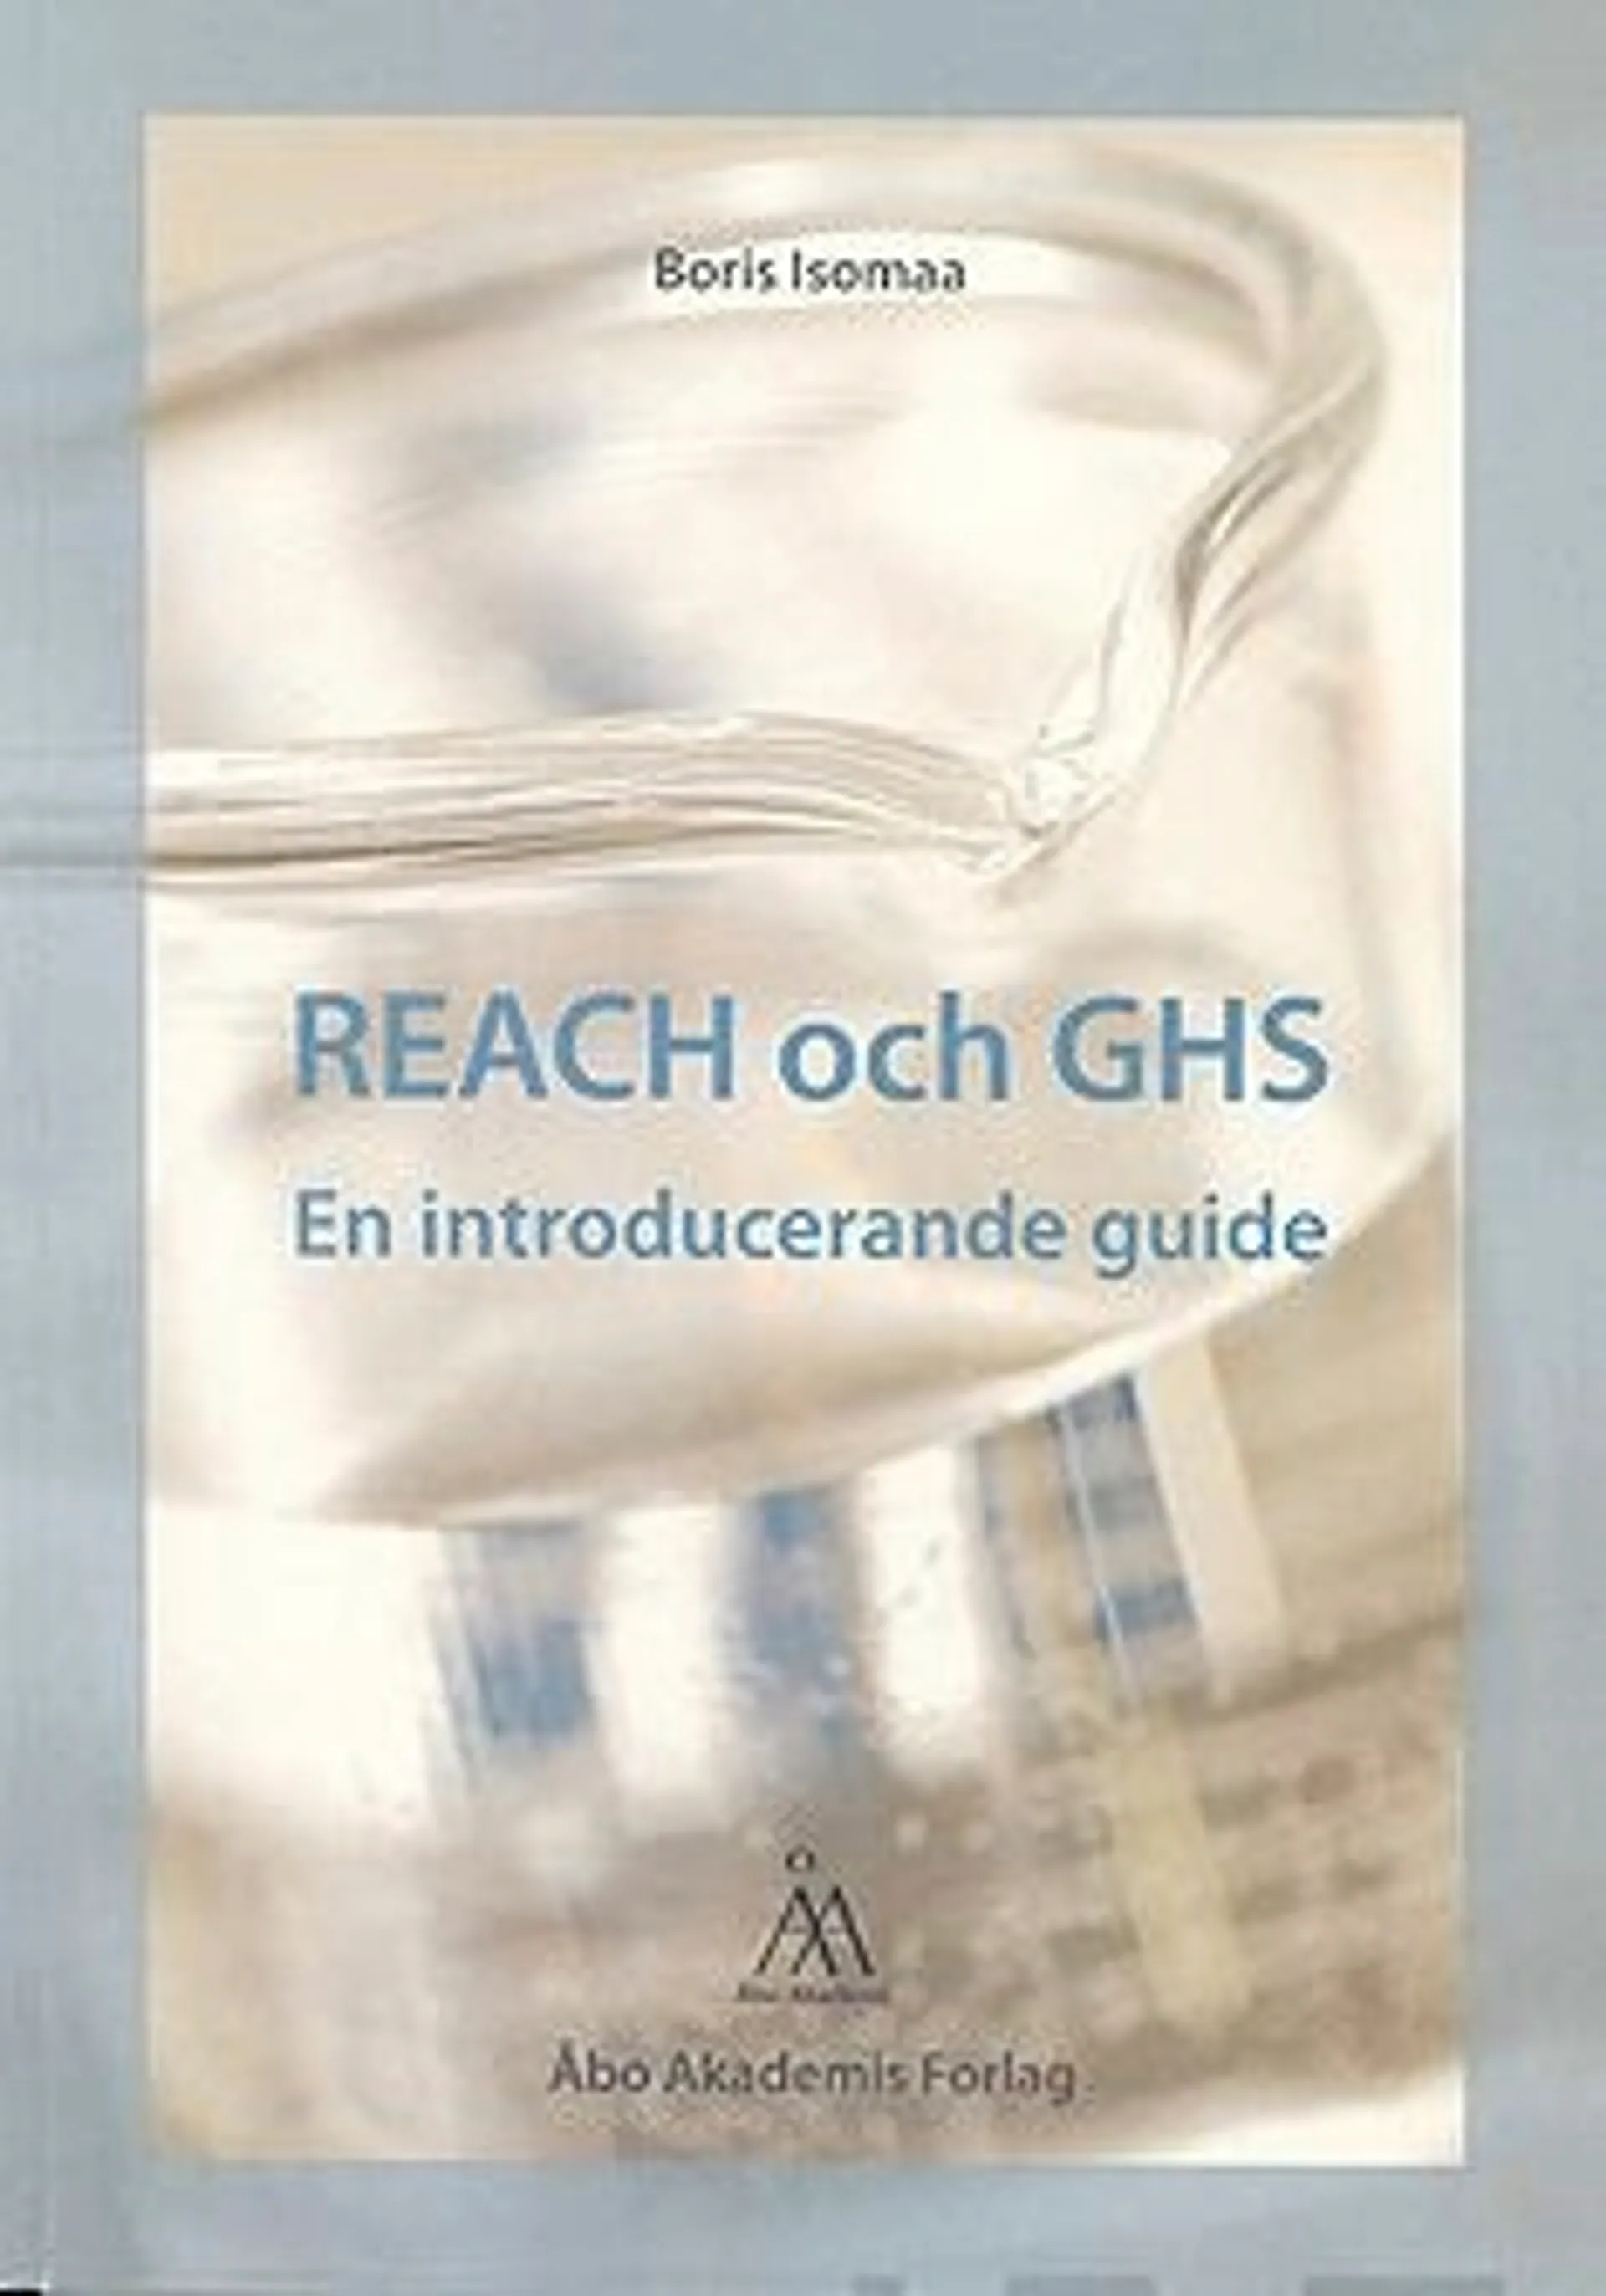 Isomaa, REACH och GHS